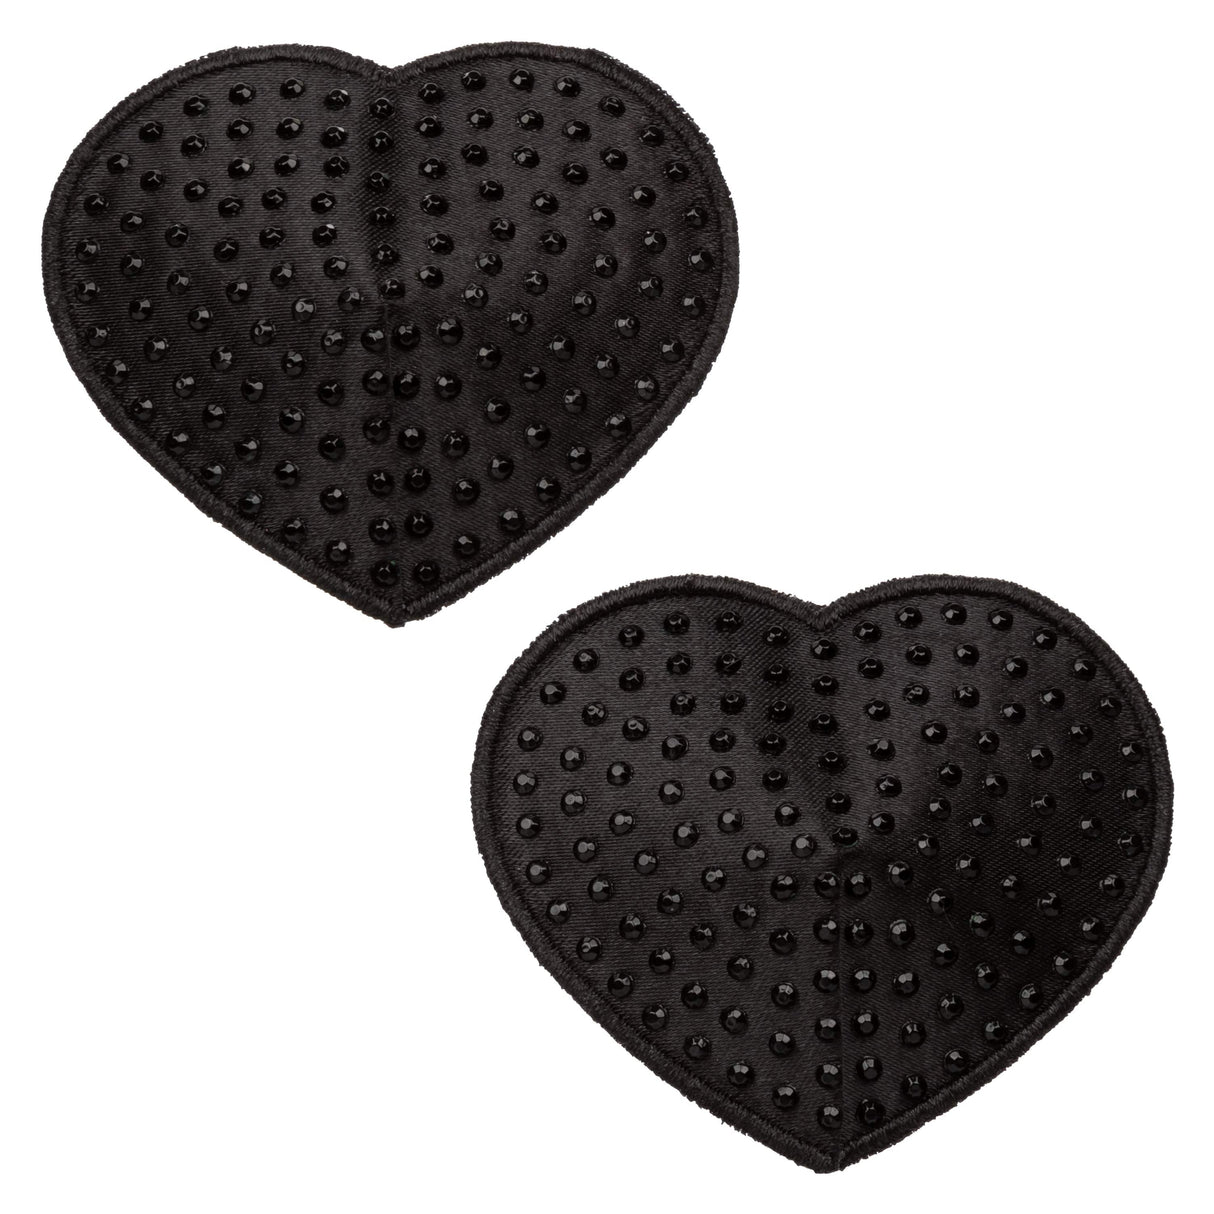 California Exotics - Radiance Heart Pasties Nipple Covers (Black) CE2016 CherryAffairs